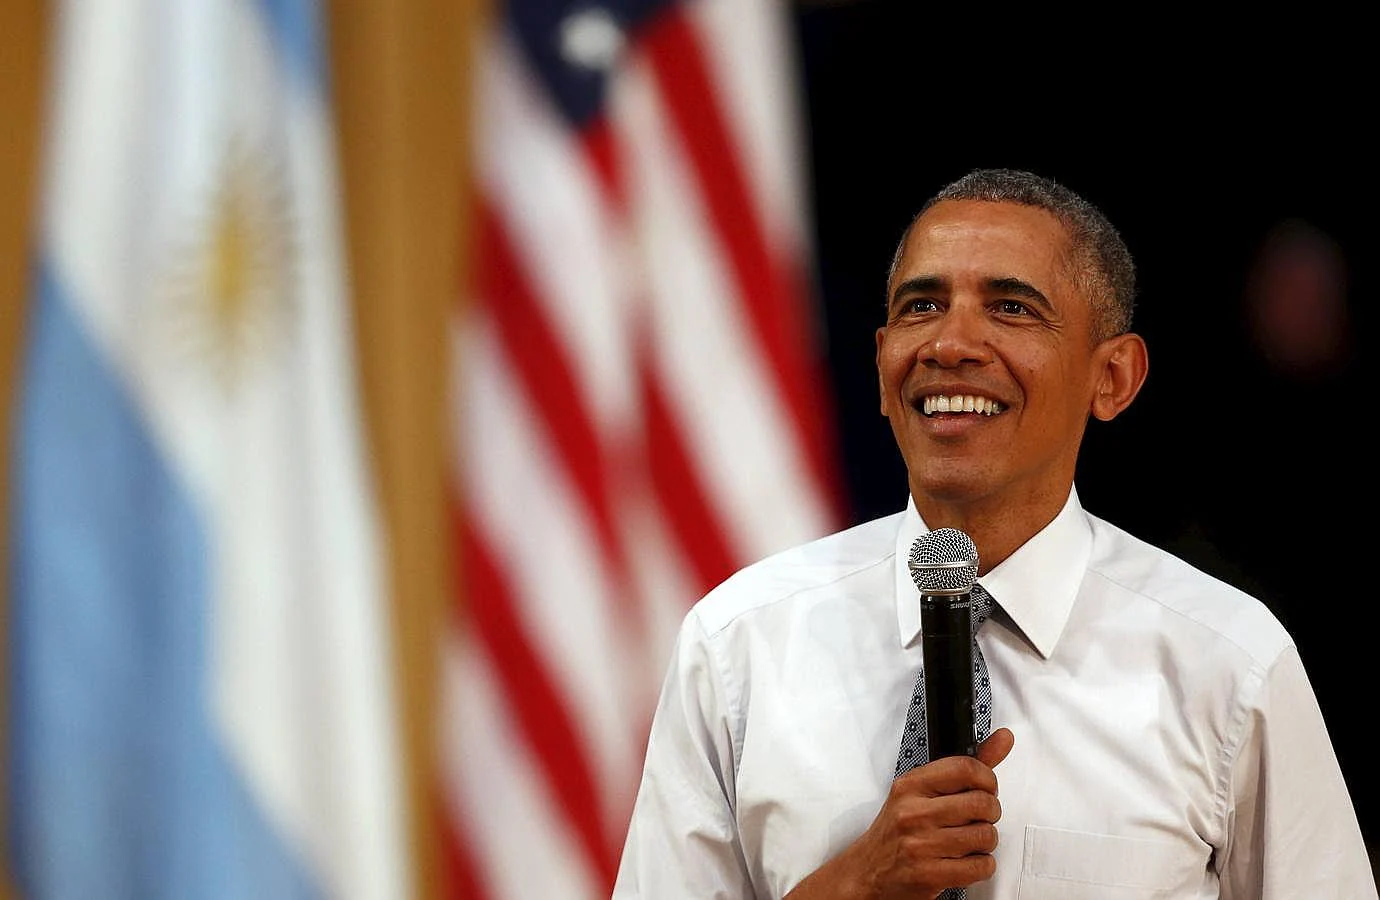 Obama se mostró cómodo en su discurso ante los jóvenes y se quitó la chaqueta